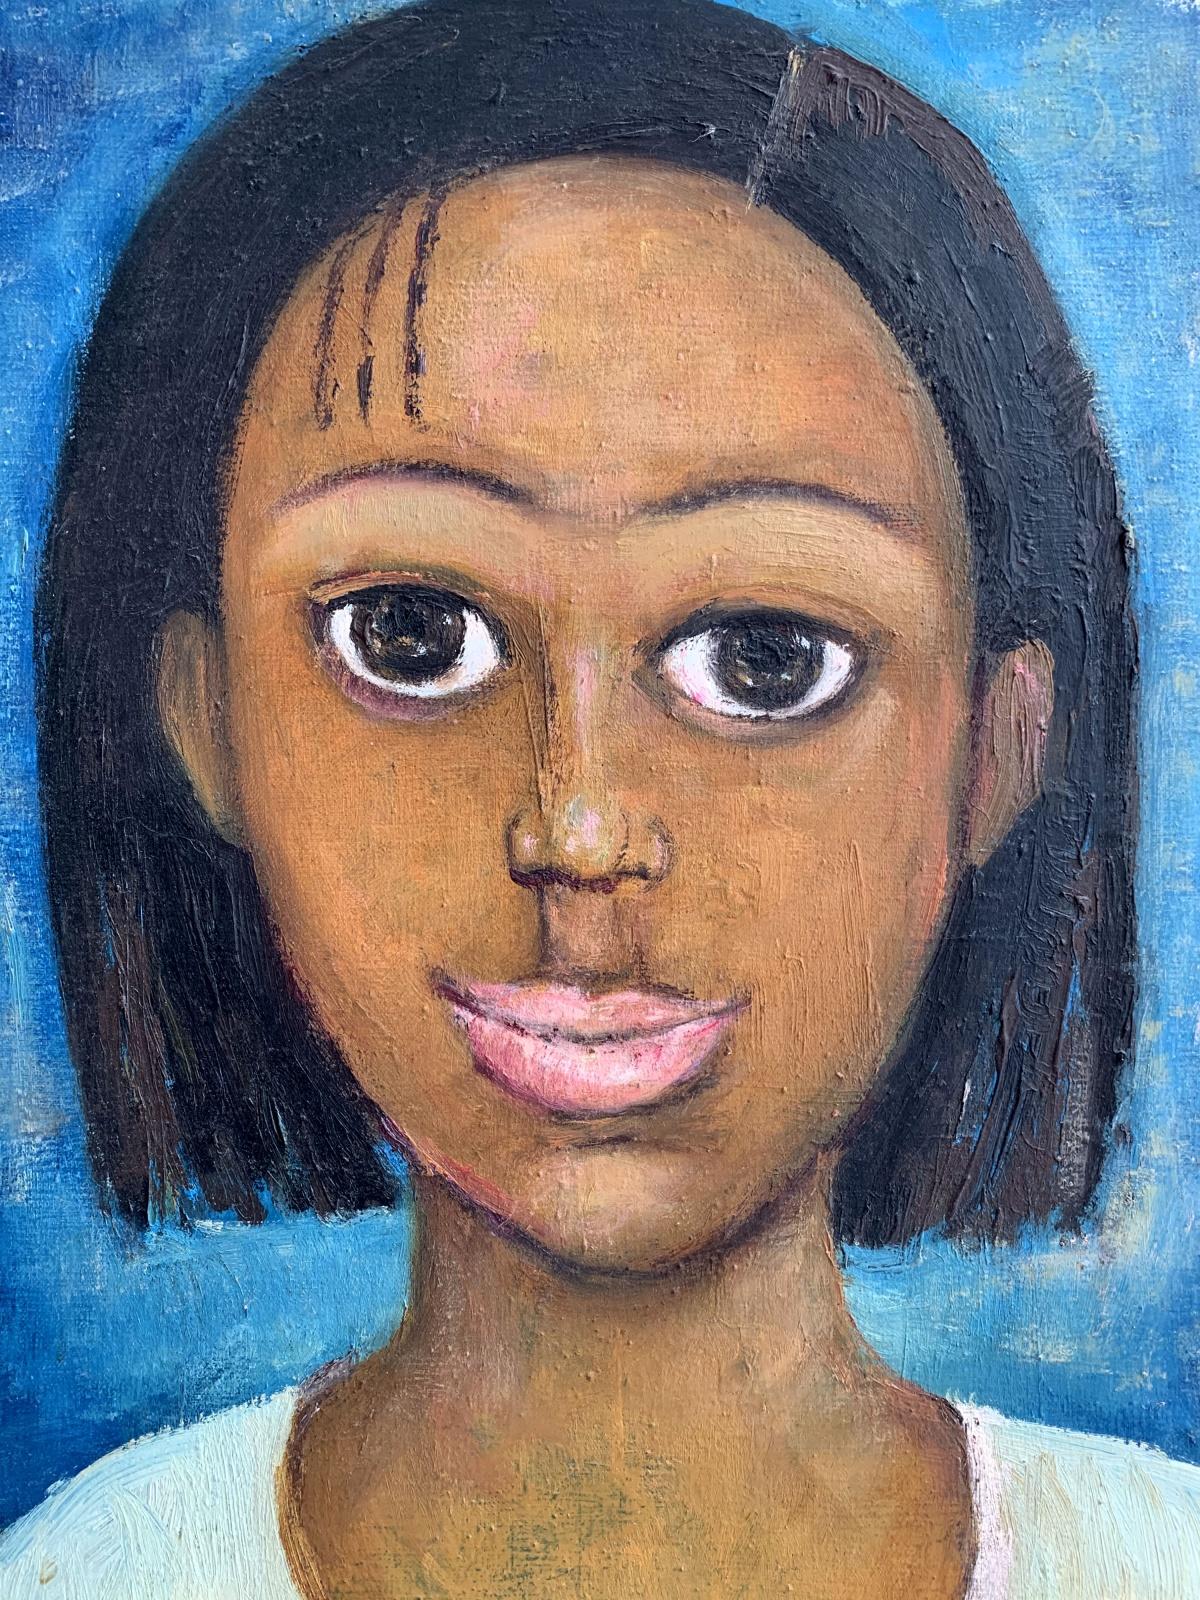 Portrait - Peinture à l'huile figurative, bleu, tons chauds, gros yeux - Painting de Marlena Nizio